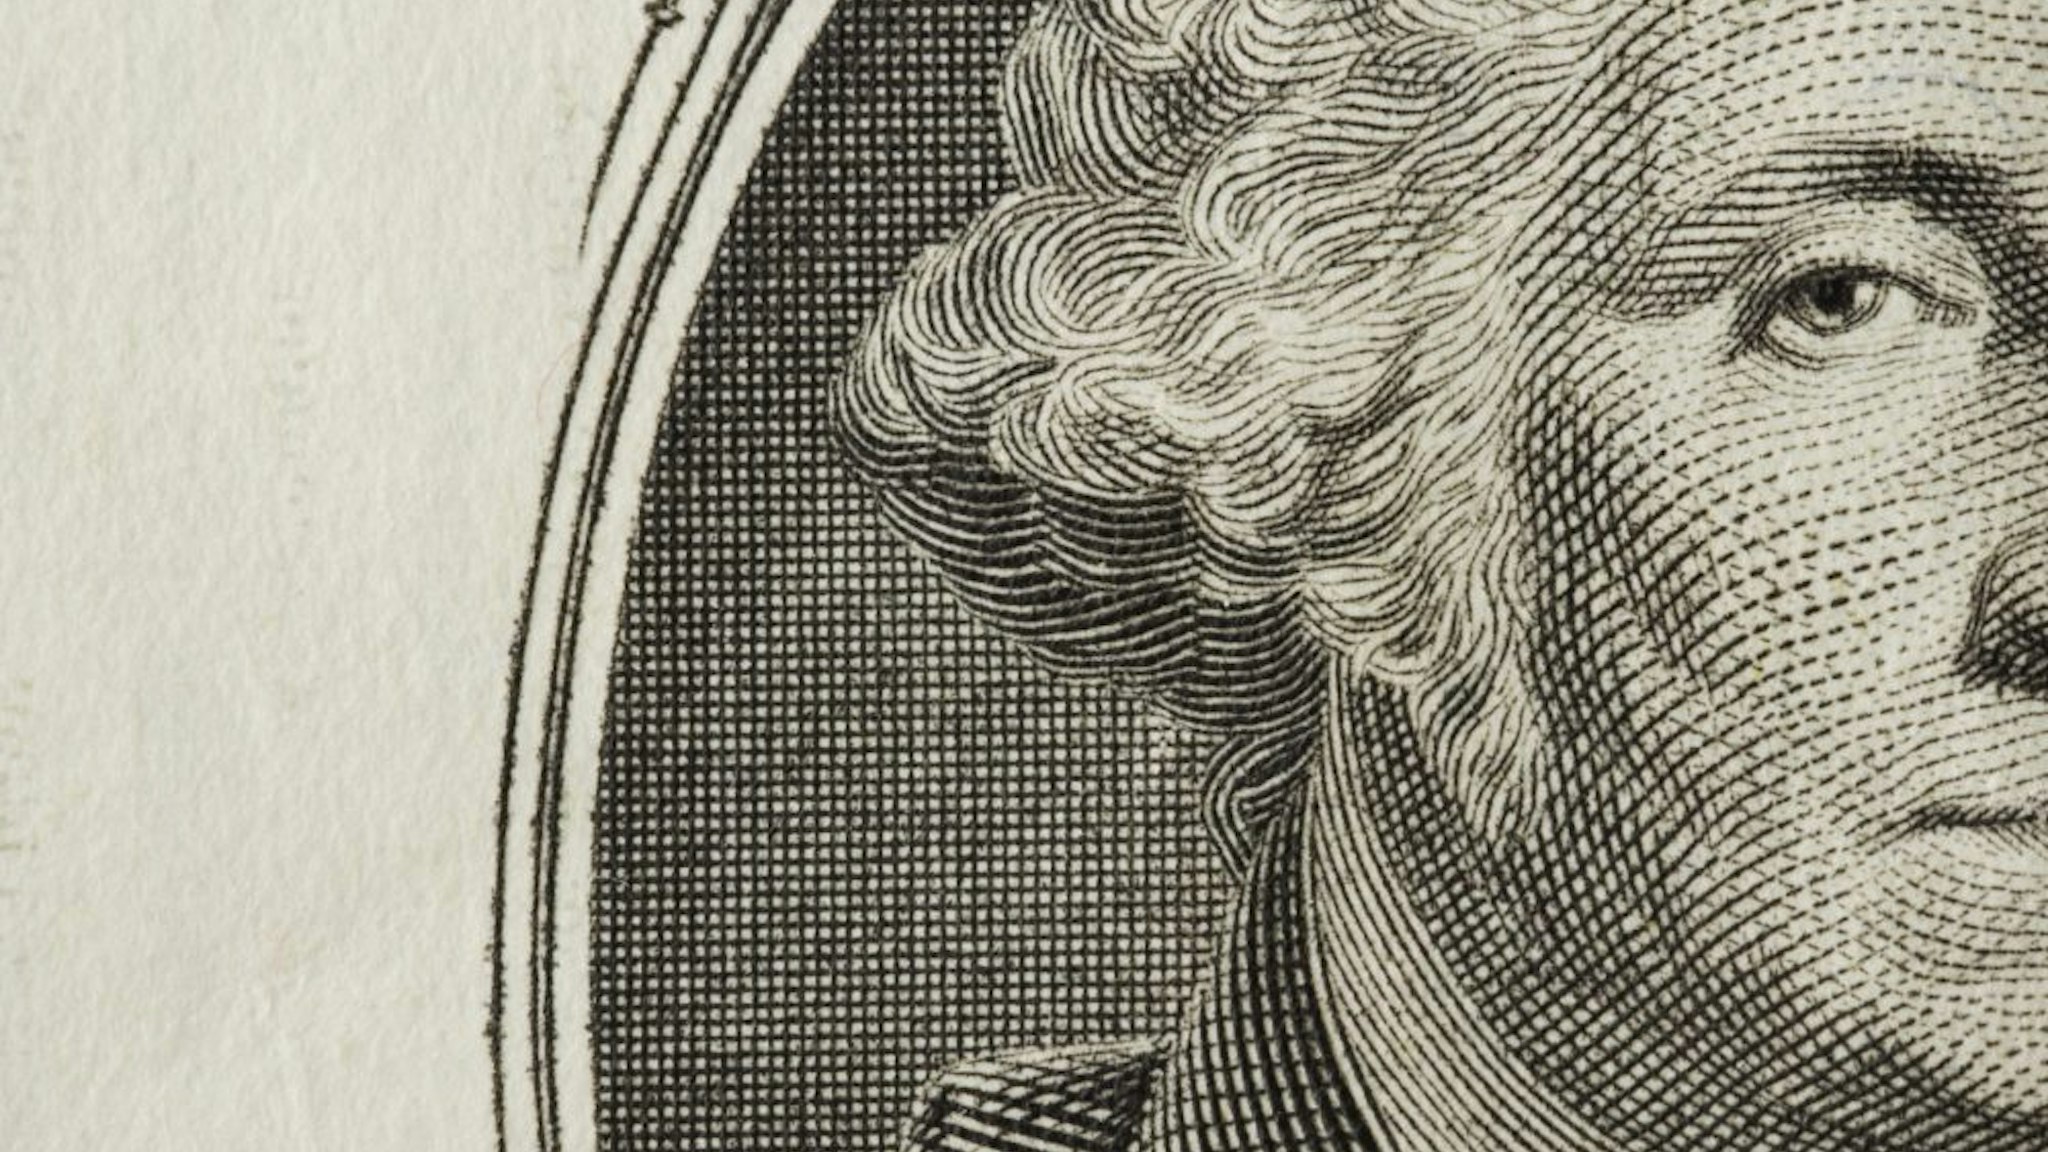 Dollar Bill Detail